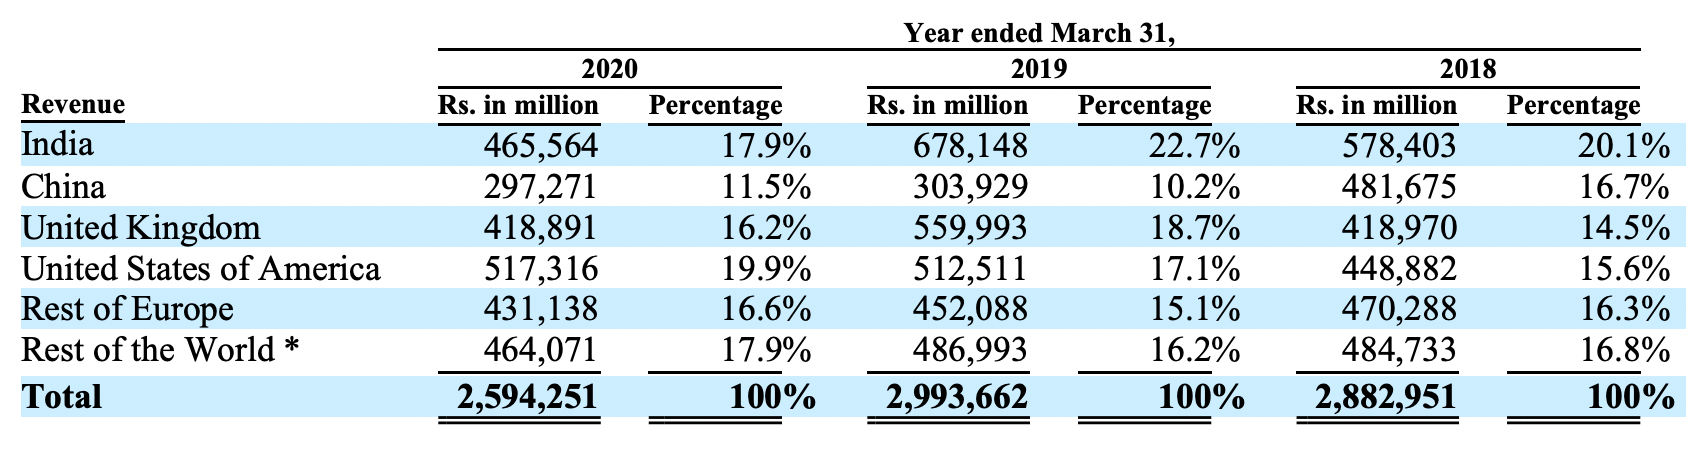 Продажи компании, млн индийских рупий. Источник: годовой отчет компании, стр. 83 (92)